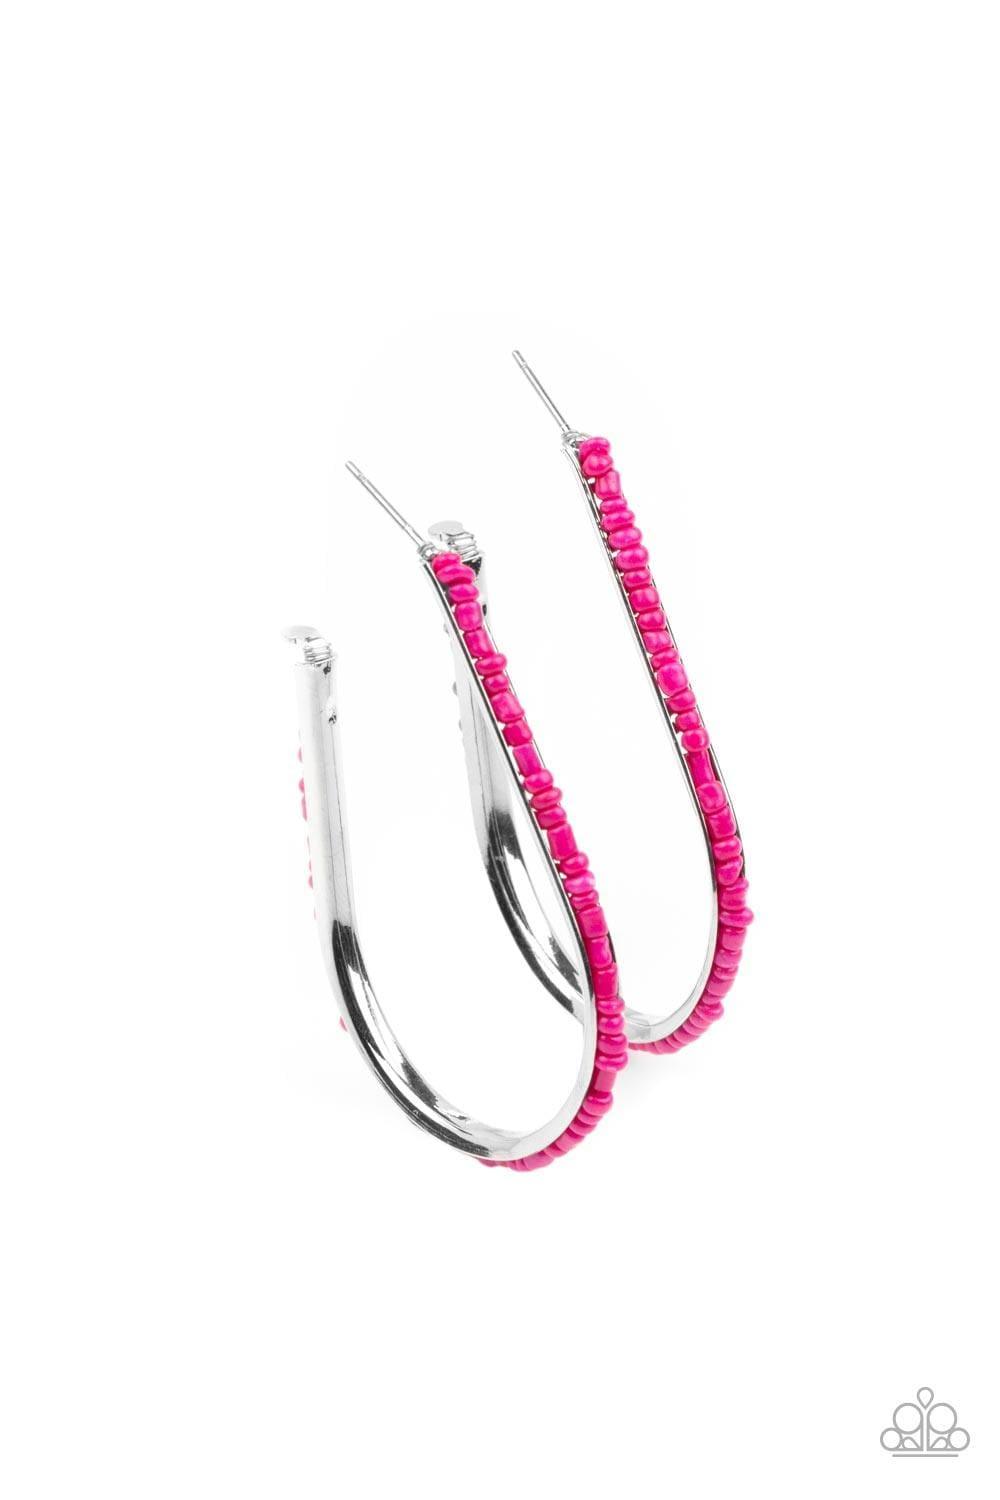 Paparazzi Accessories - Beaded Bauble - Pink Hoop Earrings - Bling by JessieK